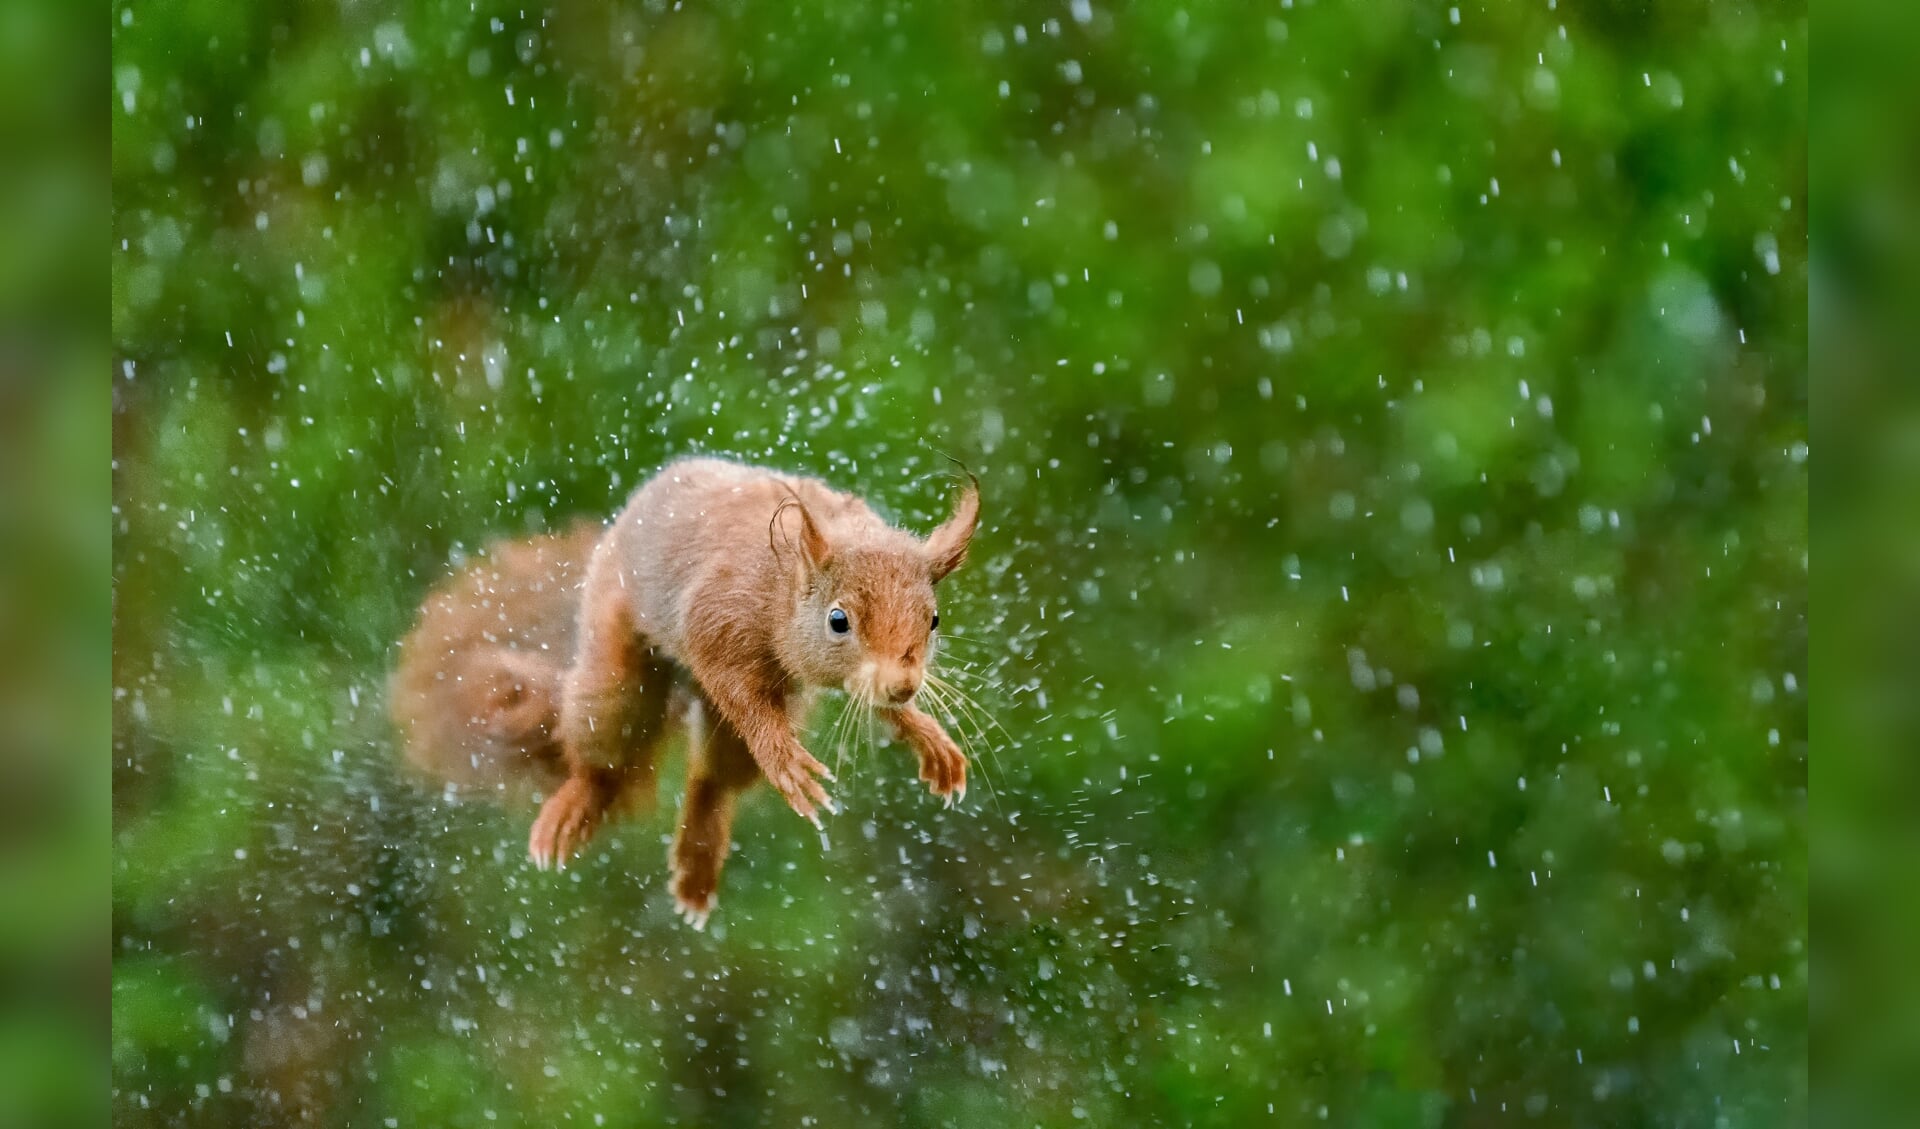 Een eekhoorn schudt tijdens een sprong in de stromende regen zijn vacht uit.